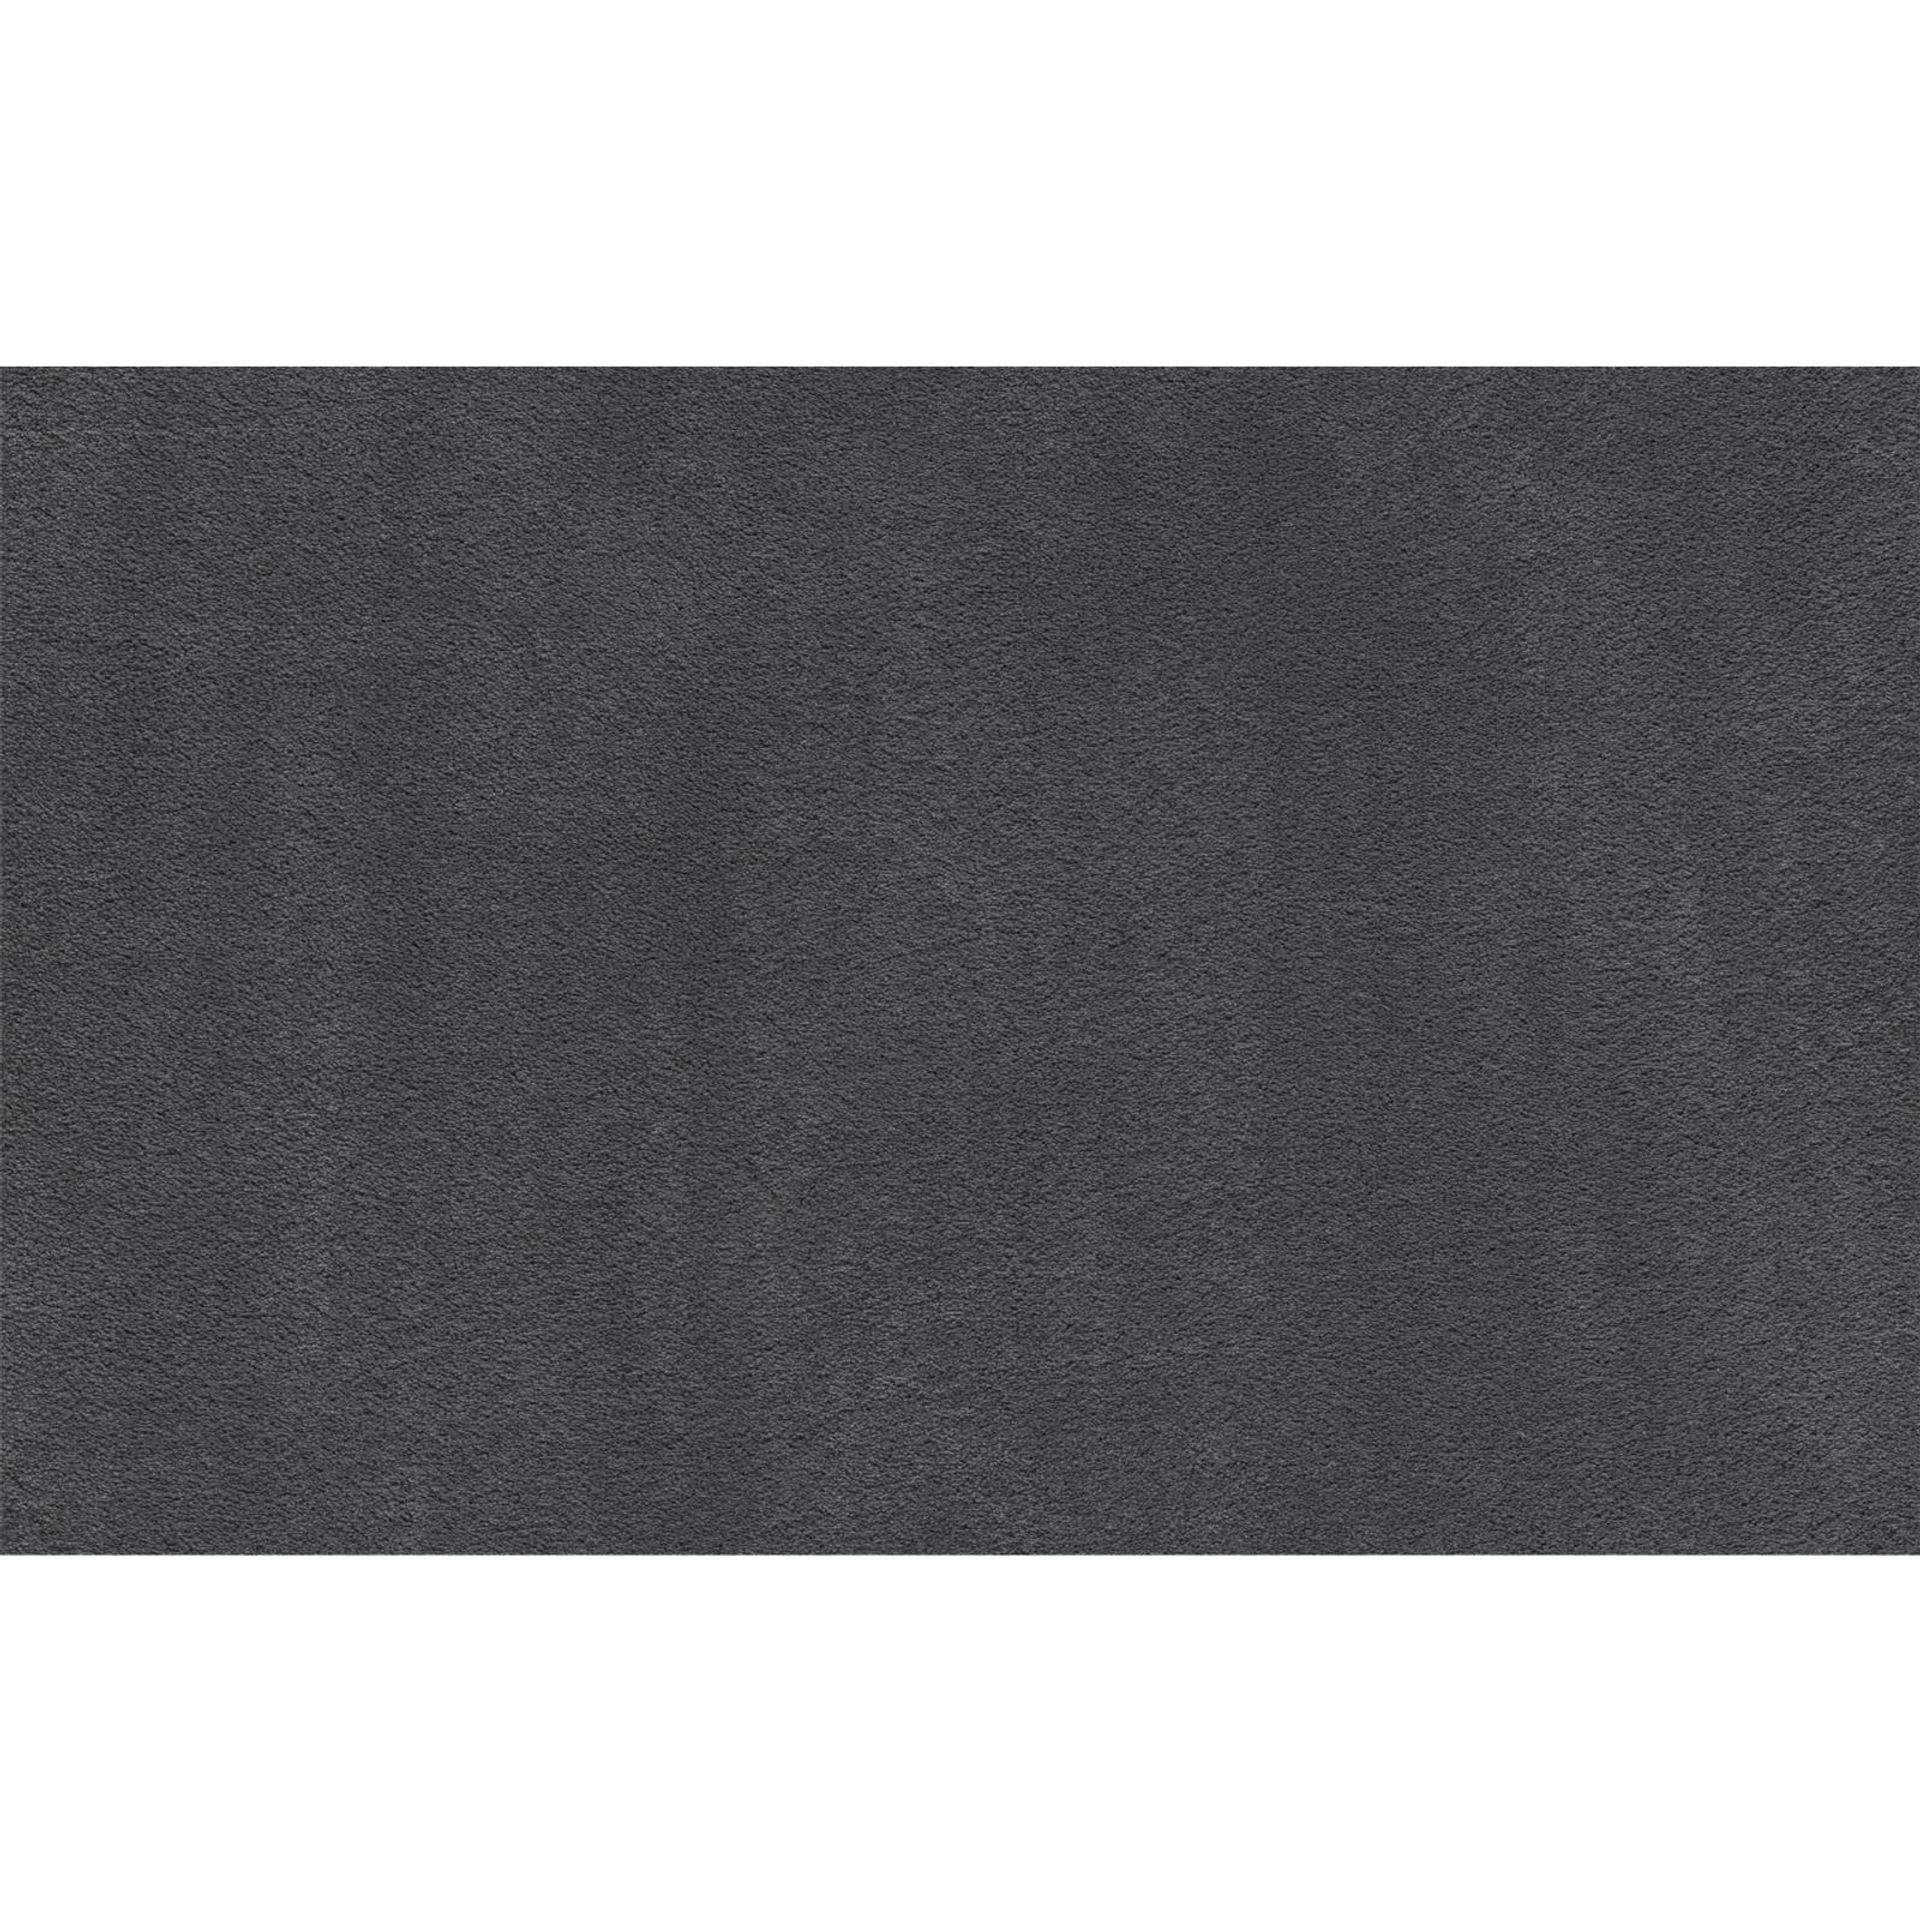 Teppichboden Vorwerk Superior 1067 MIRA Hochflor Grau 5Y01 - Rollenbreite 500 cm